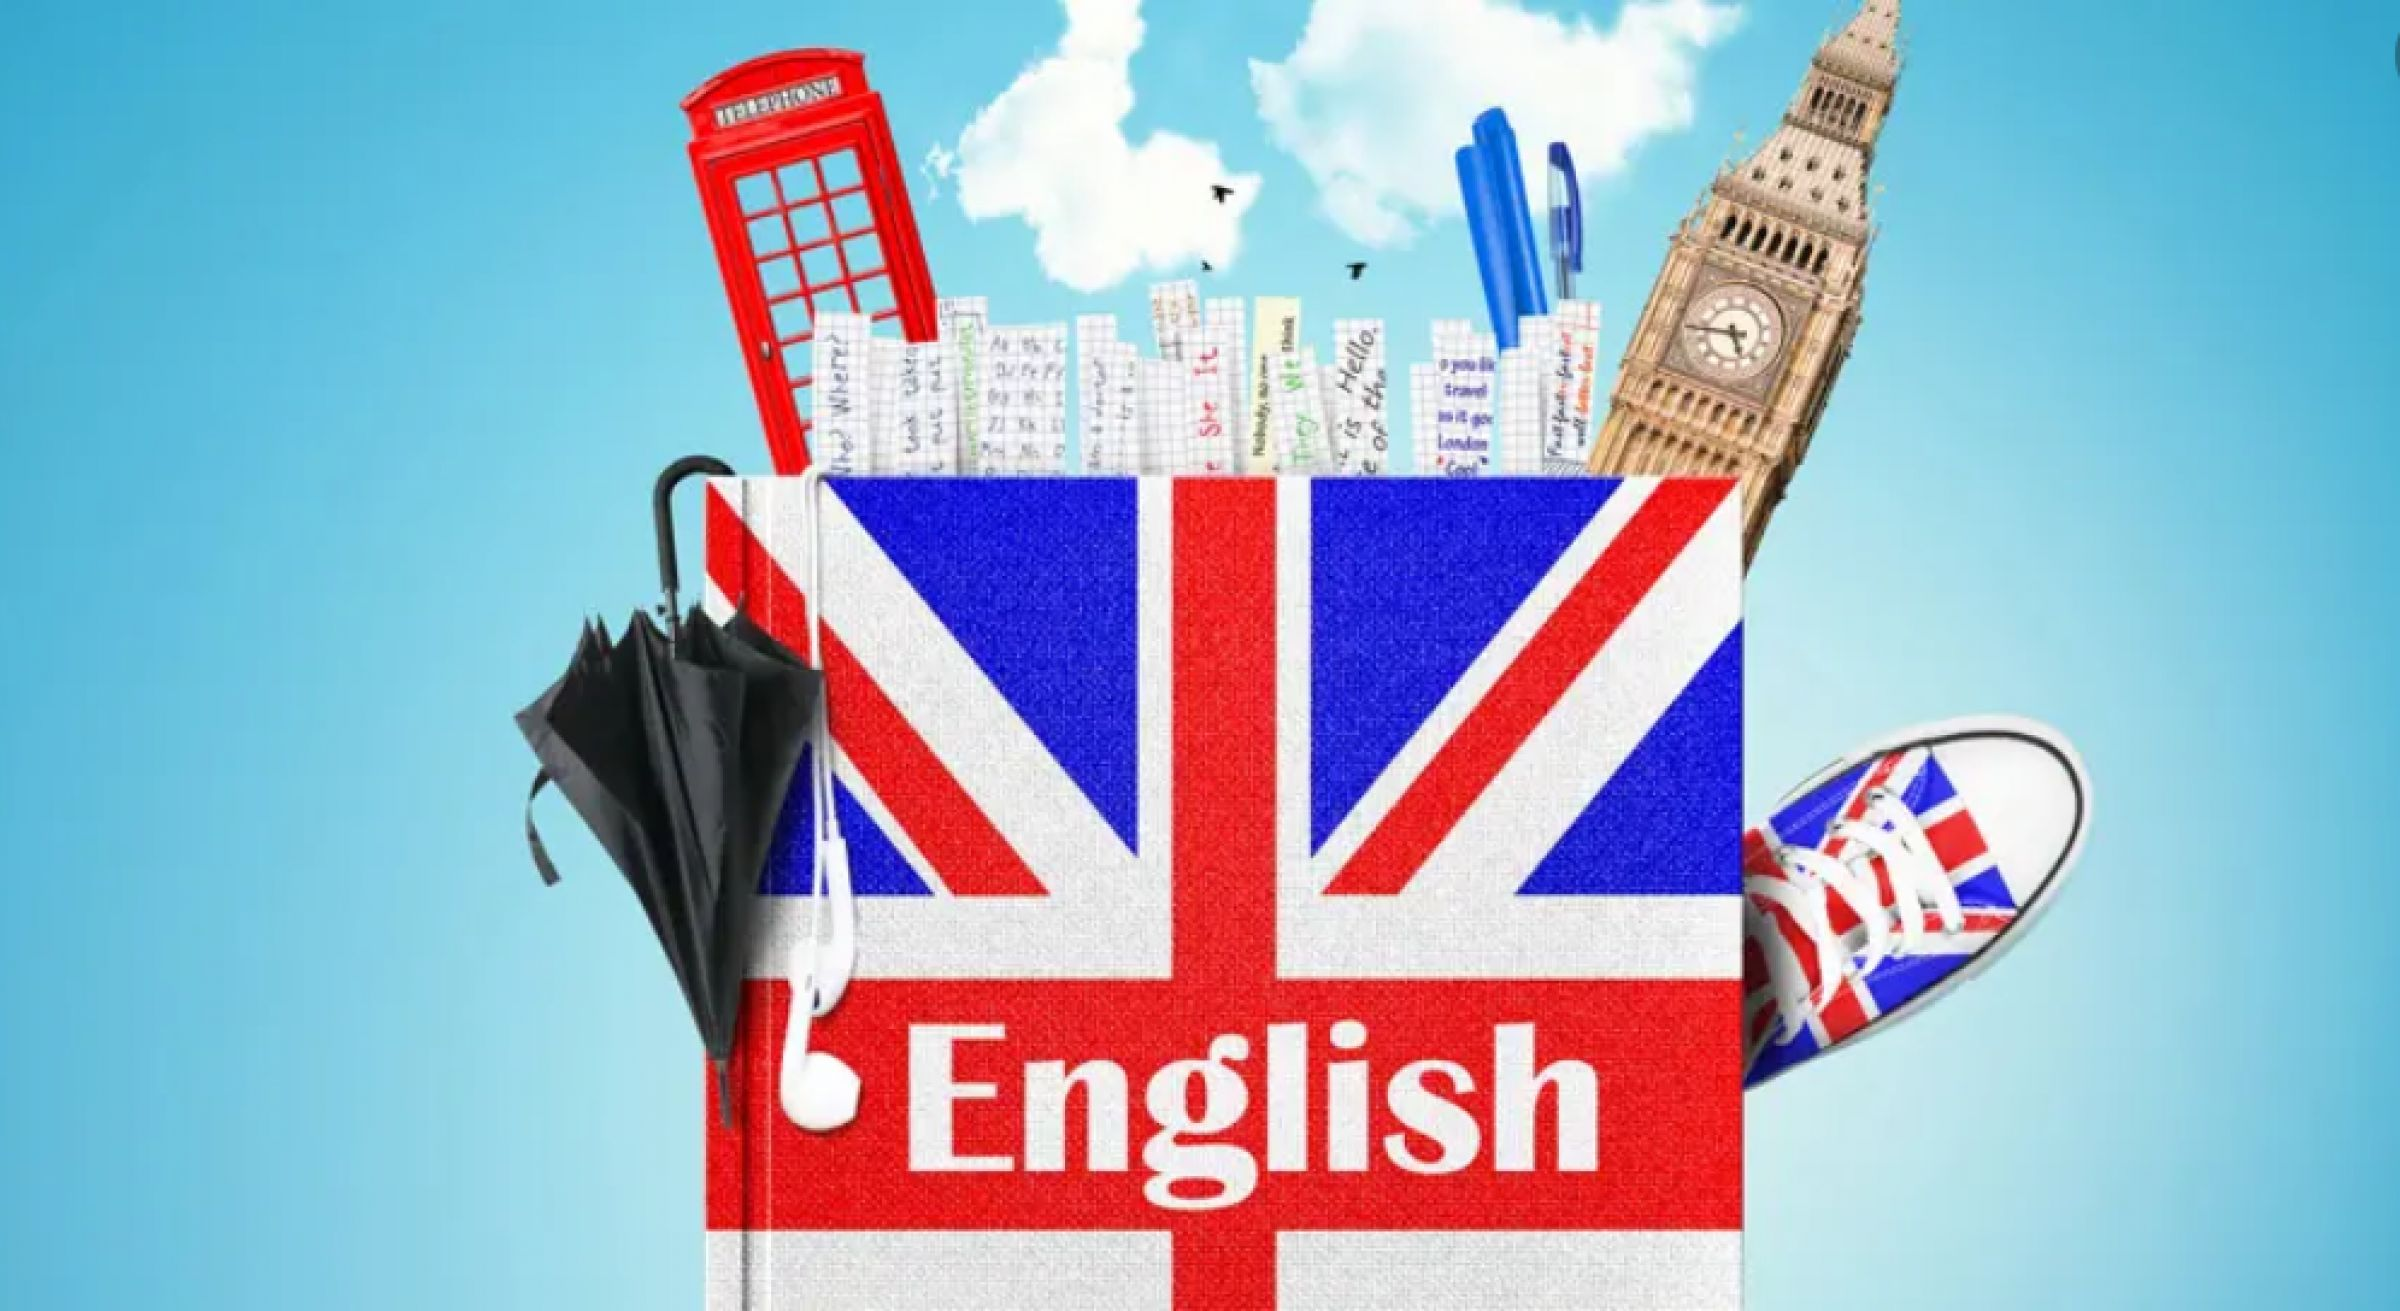 Школа американского английского языка. Английский. Иностранные языки картинки. Изучение английского языка. Выучить английский язык.